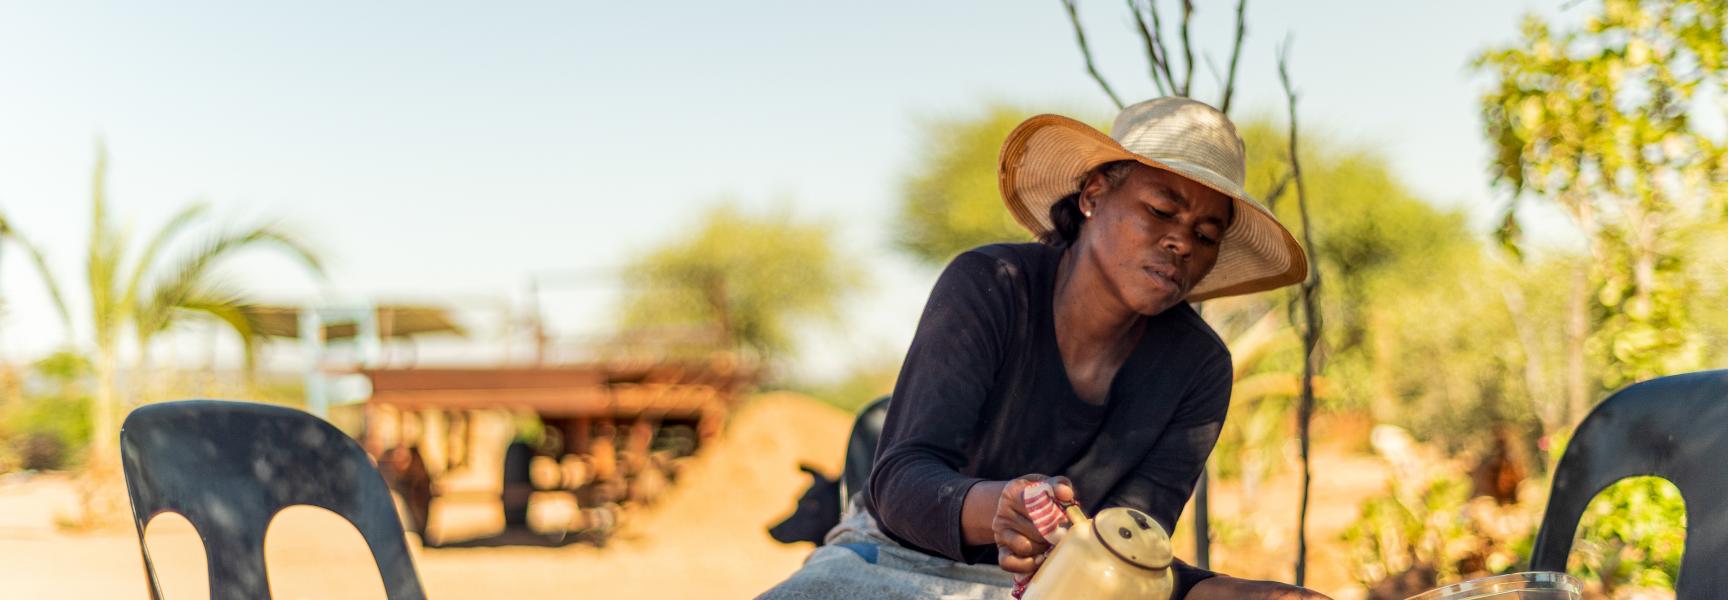 Une femme servant le thé au Botswana